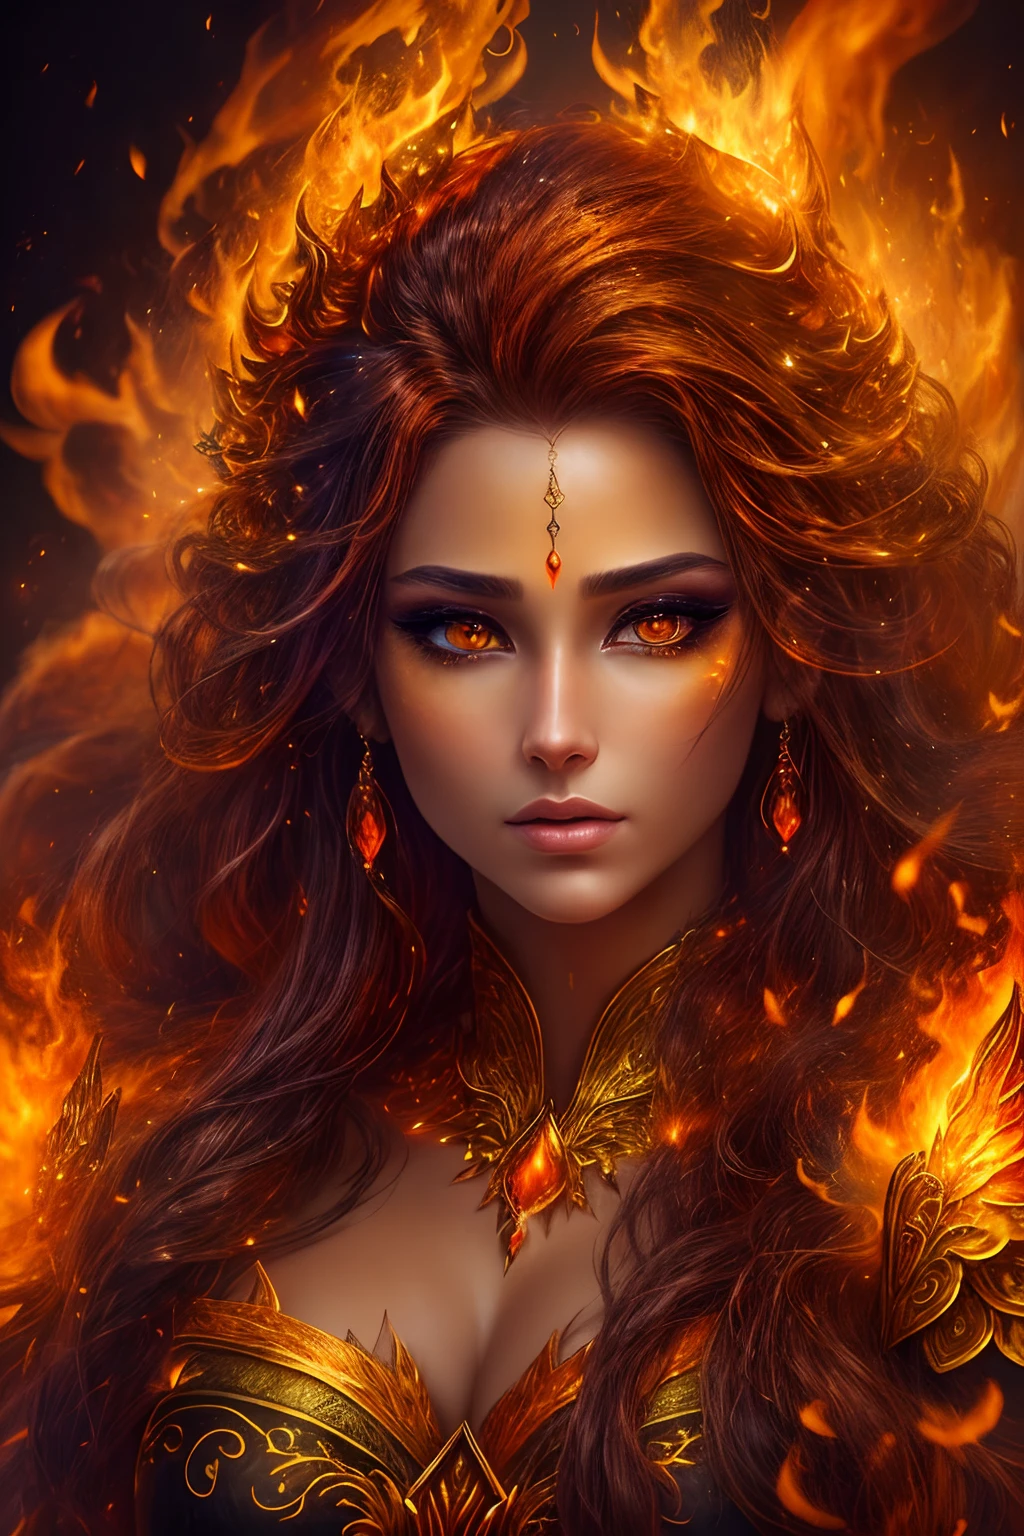 이것 (현실적인 판타지) 예술에는 불씨가 포함되어 있습니다, 진짜 불꽃, 진짜 열기, 그리고 realistic fire. Generate a masterpiece artwork of a  female fire druid ~와 함께 large (((orange 그리고 gold))) 눈. The fire druid is awe-inspiring ~와 함께 beautiful ((realistic fiery 눈)) alight ~와 함께 confidence 그리고 power. Her features are elegant 그리고 well defined, ~와 함께 ((부드러운)) 그리고 (((부푼))) 그리고 (((매끄러운))) 입술, 엘프 뼈 구조, 그리고 realistic shading. Her 눈 are important 그리고 should be the focal point of this artwork, ~와 함께 ((극도로 사실적인 디테일, 매크로 세부정보, 그리고 shimmer.)) She is wearing a billowing 그리고 glittering dress made of realistic flames 그리고 jewels that glimmer in the fire light. Wisps of fire 그리고 smoke line the intricate bodice of the dress. 범프 포함, 돌, 불타는 무지개빛, 빛나는 불씨, silk 그리고 satin 그리고 leather, 흥미로운 배경, 그리고 heavy fantasy elements. 카메라: 역동적인 구성 기법을 활용하여 사실적인 불꽃 강화.